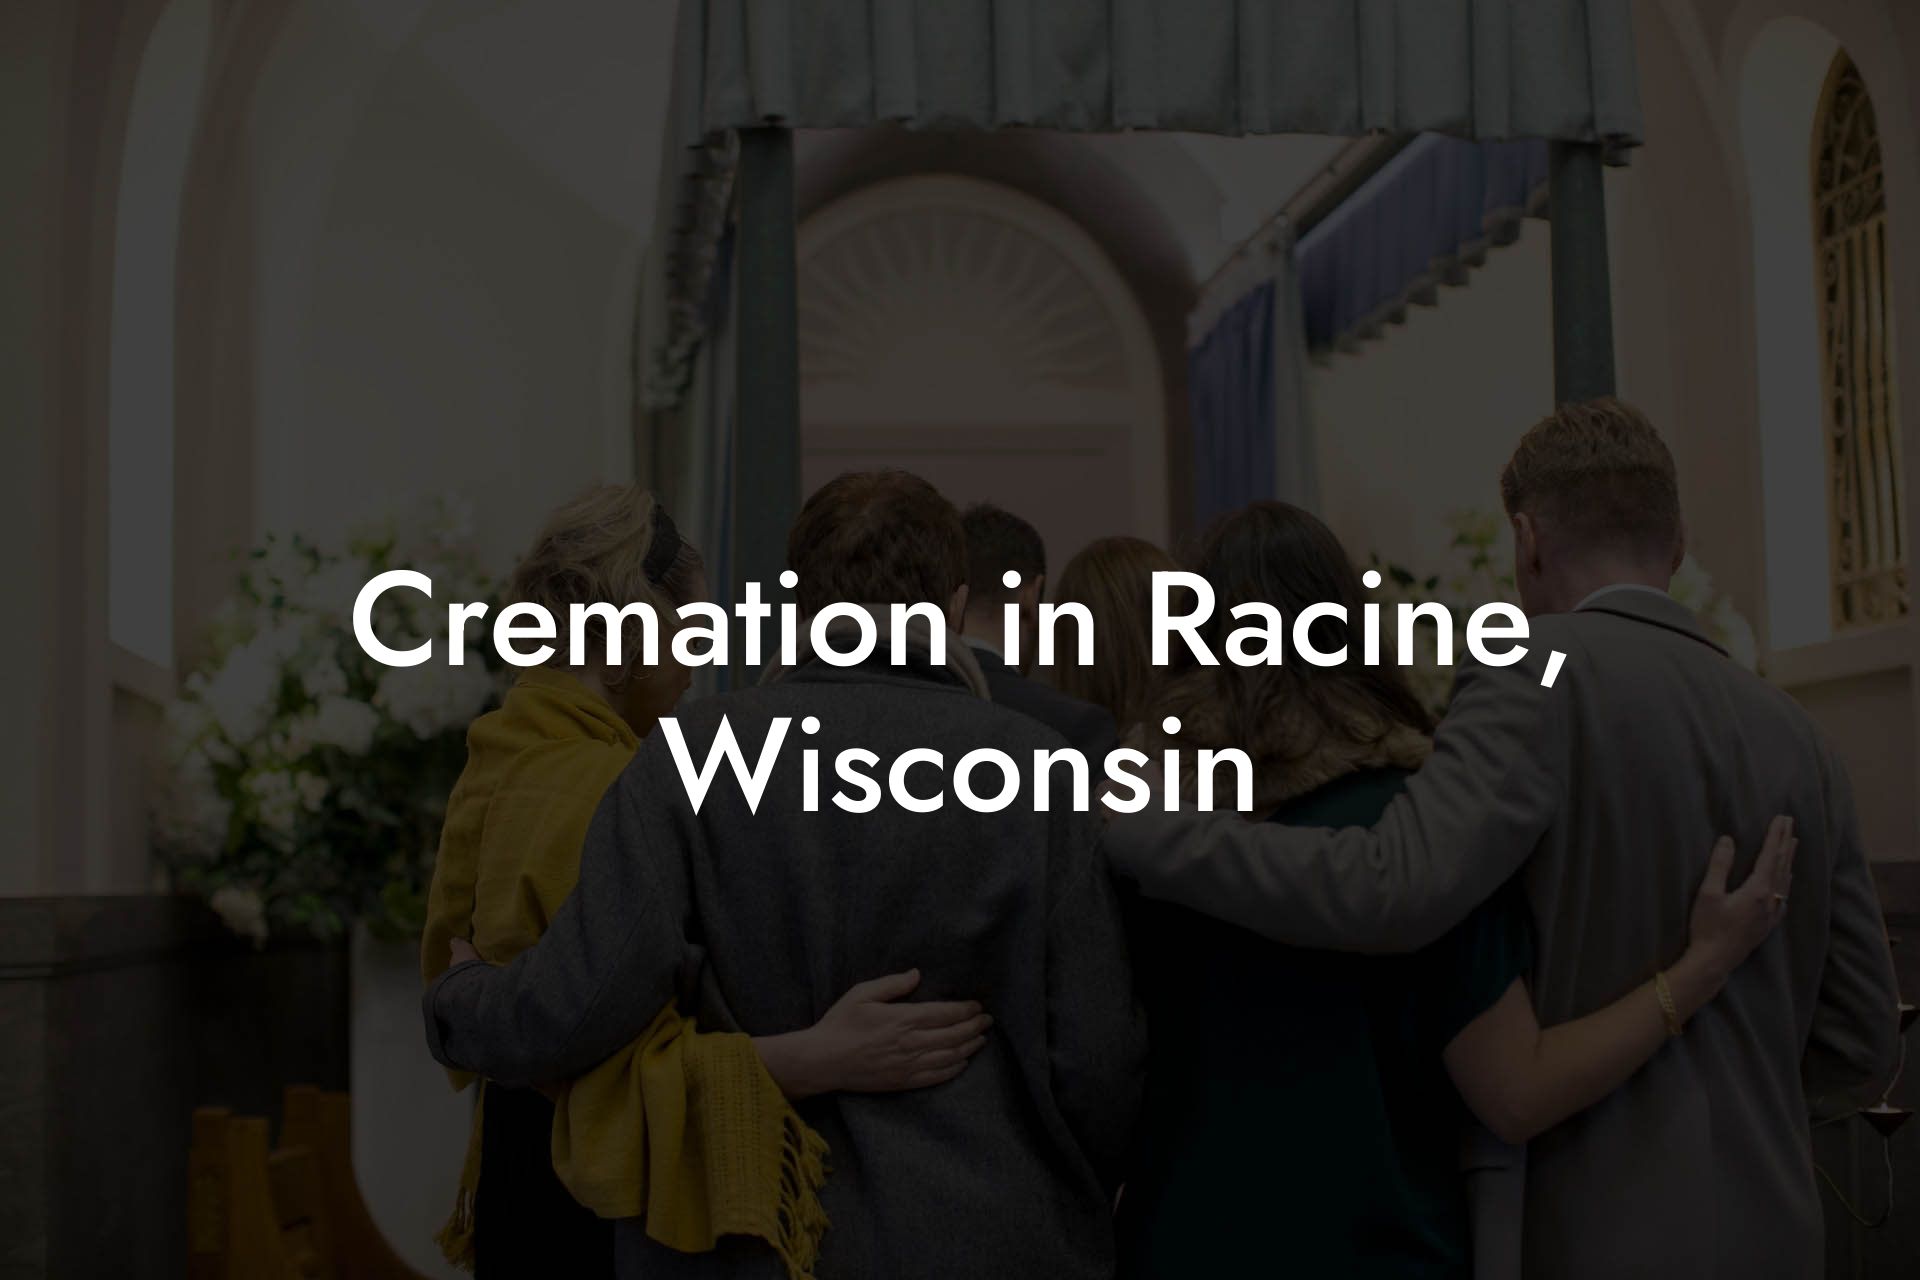 Cremation in Racine, Wisconsin